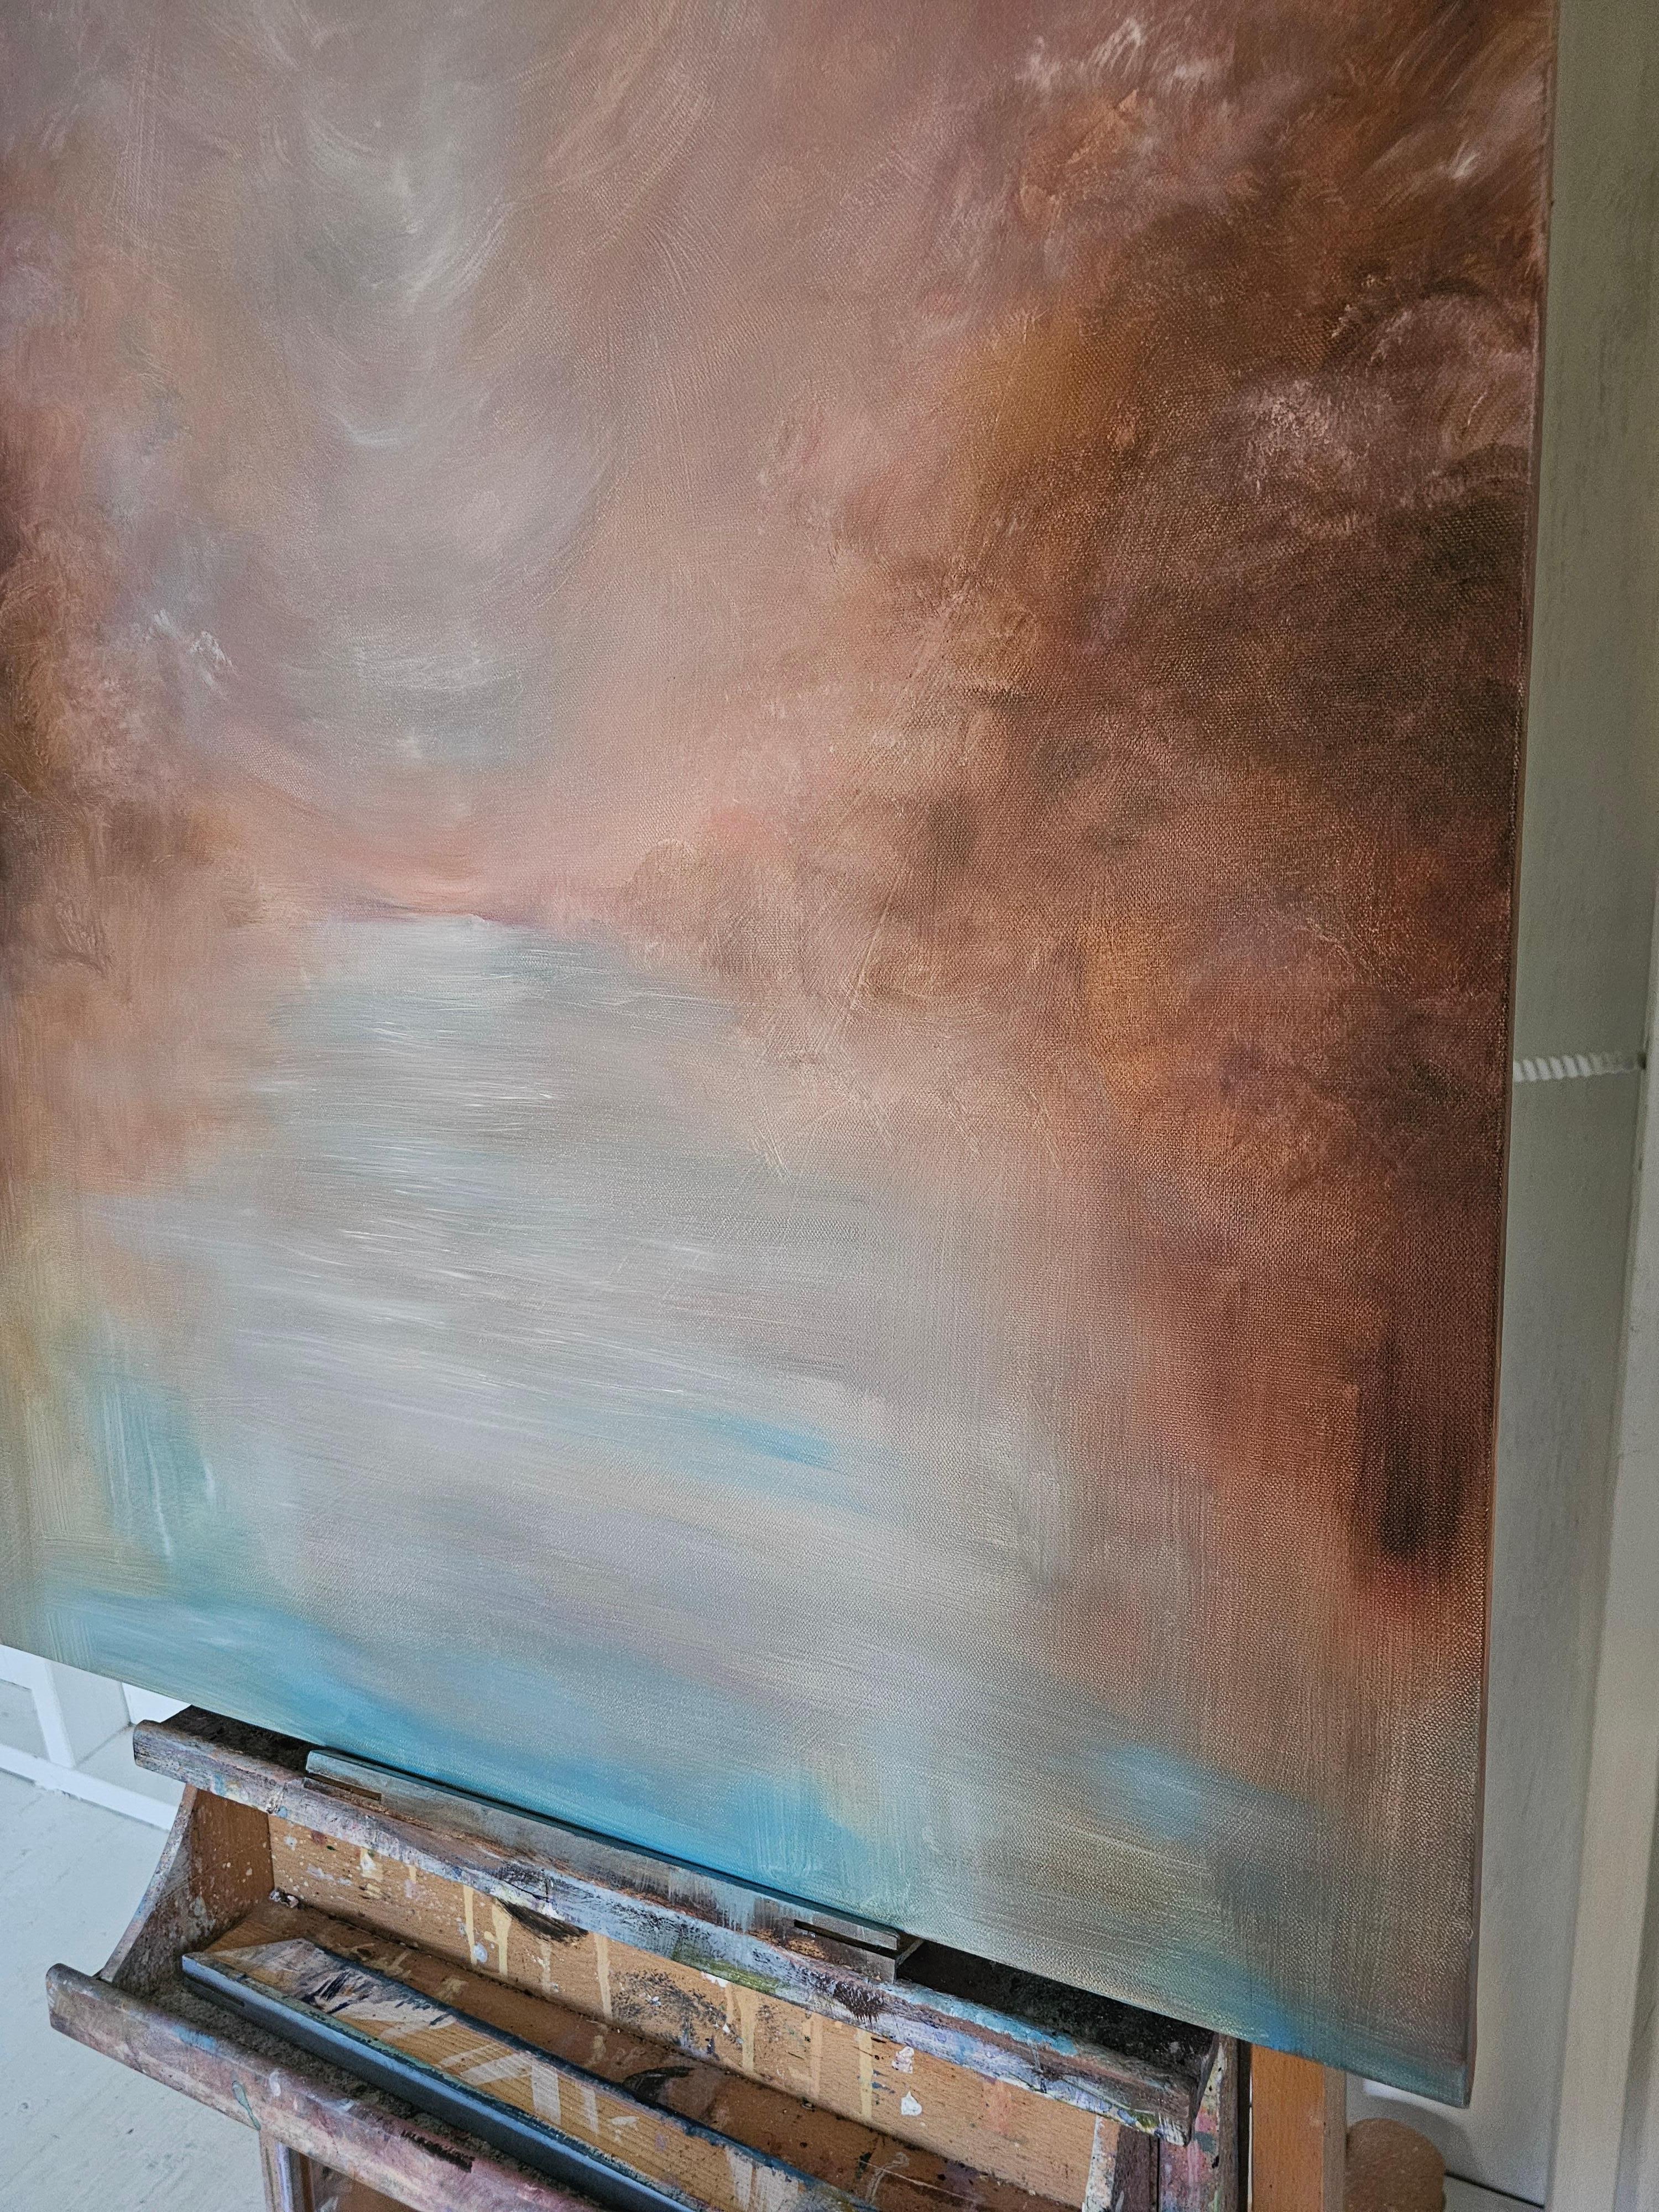 Das ist es, was sich die Hoffnung anfühlt - Abstrakte atmosphärische Landschafts-Wassermalerei (Abstrakter Impressionismus), Painting, von Jennifer L. Baker